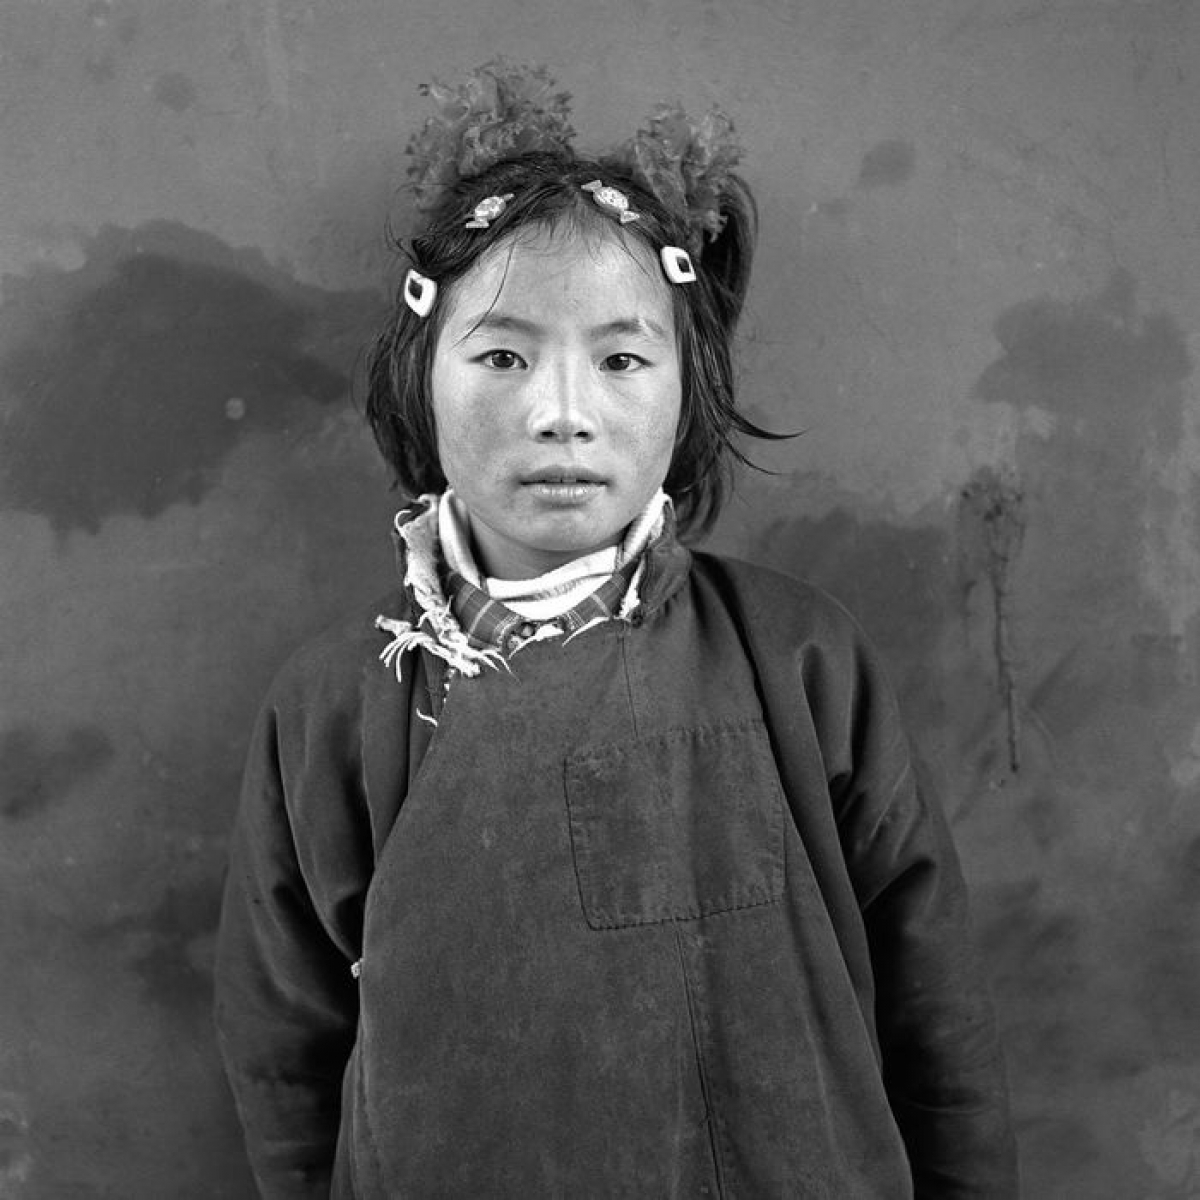 Nhiếp ảnh gia Larry Snider đã thực hiện 5 chuyến đi đến Tây Tạng (Trung Quốc). Đa phần, anh chọn đến Thanh Hải, một tỉnh khá xa thành phố Lhasa, để tìm hiểu cuộc sống người dân.